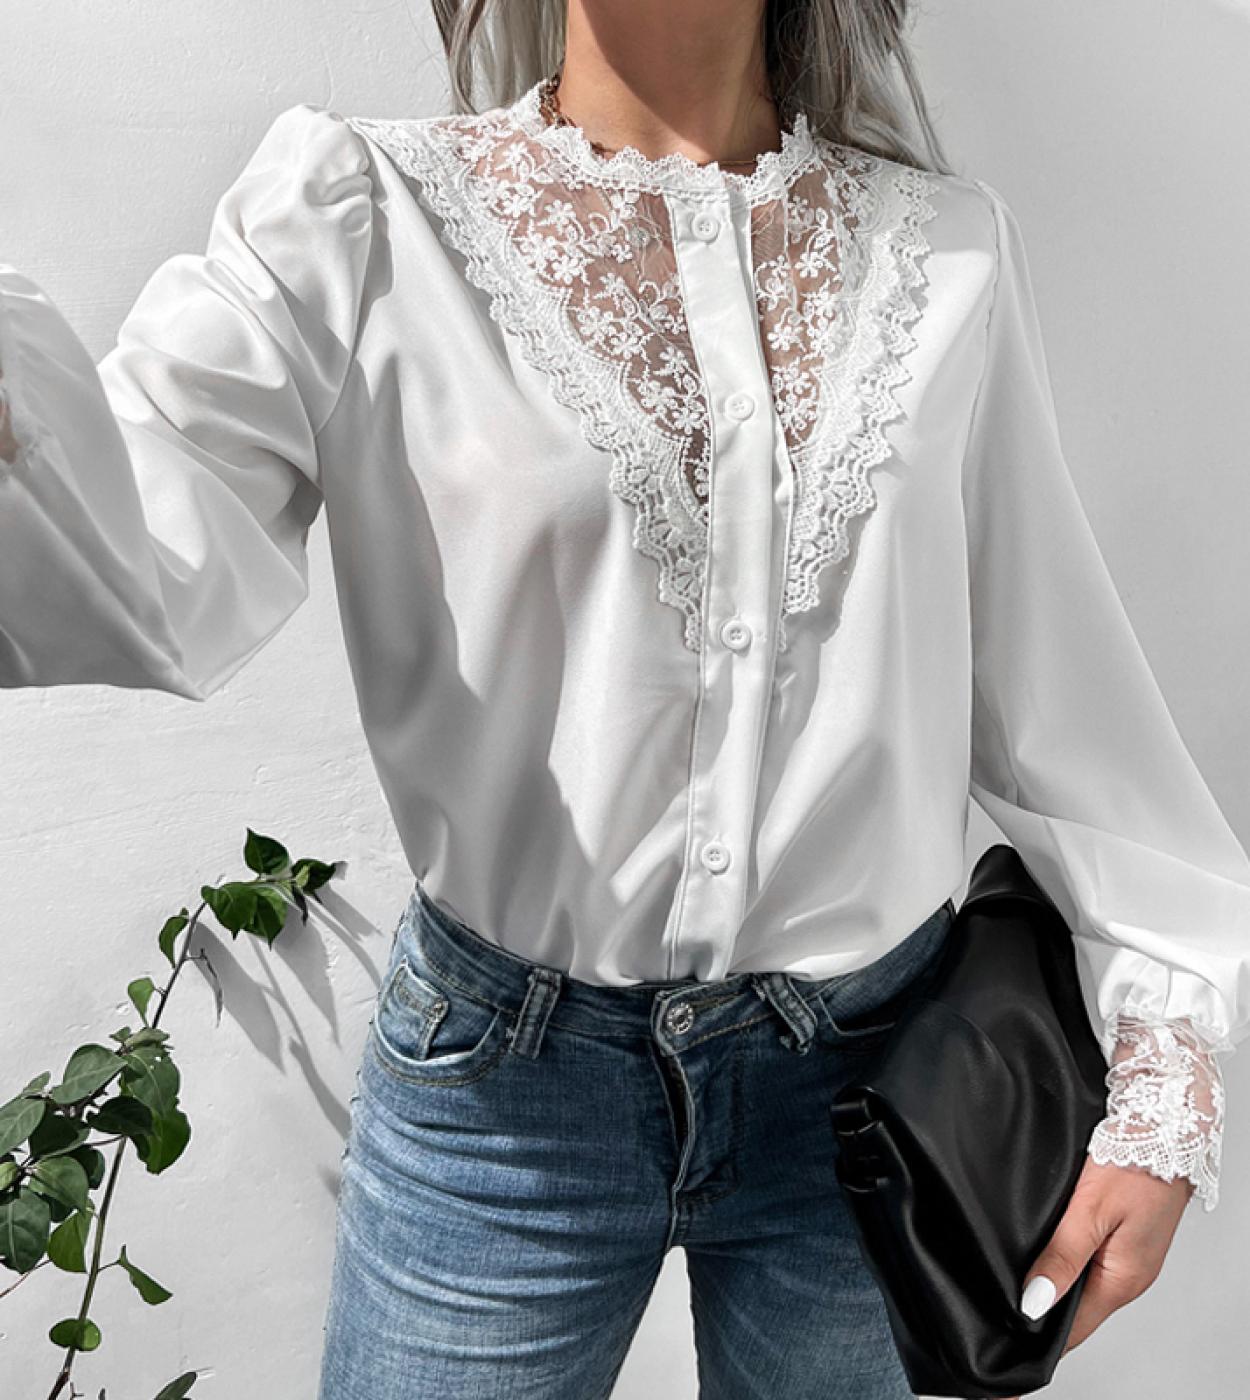 أنيقة خمر الدانتيل قميص المرأة أزياء مكتب سيدة فضفاضة طويلة الأكمام الملابس تقسم شبكة بلوزة بيضاء أعلى Blus